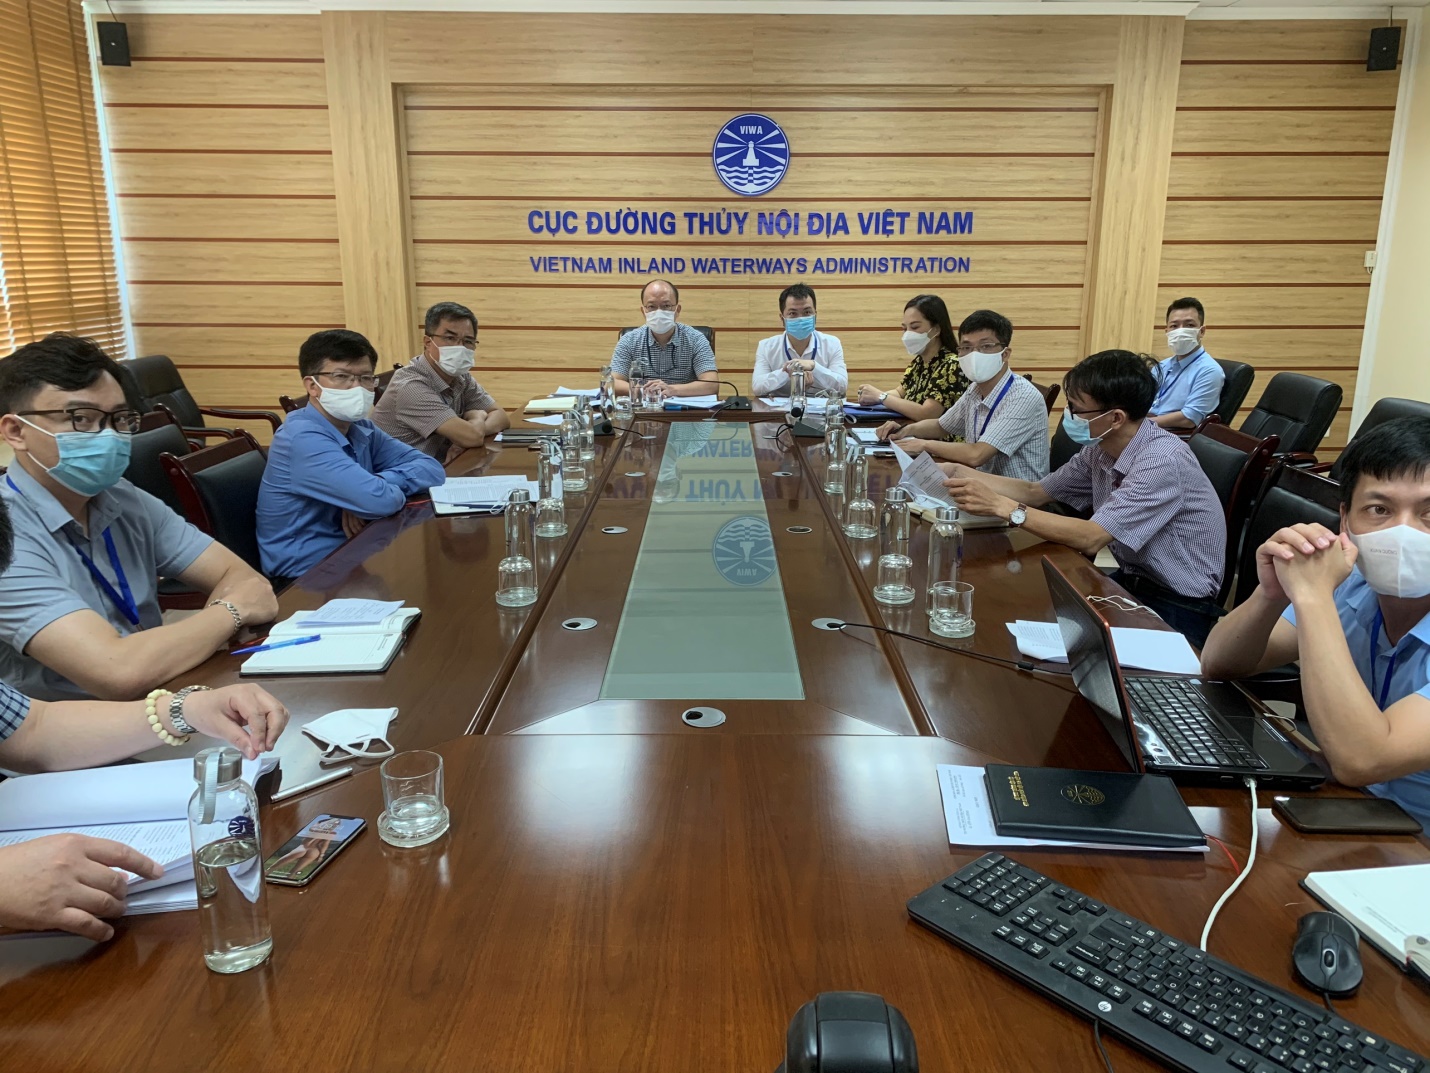 Cục ĐTNĐ Việt Nam tổ chức Hội thảo trực tuyến về phát triển ĐTNĐ khu vực Đồng bằng Bắc Bộ